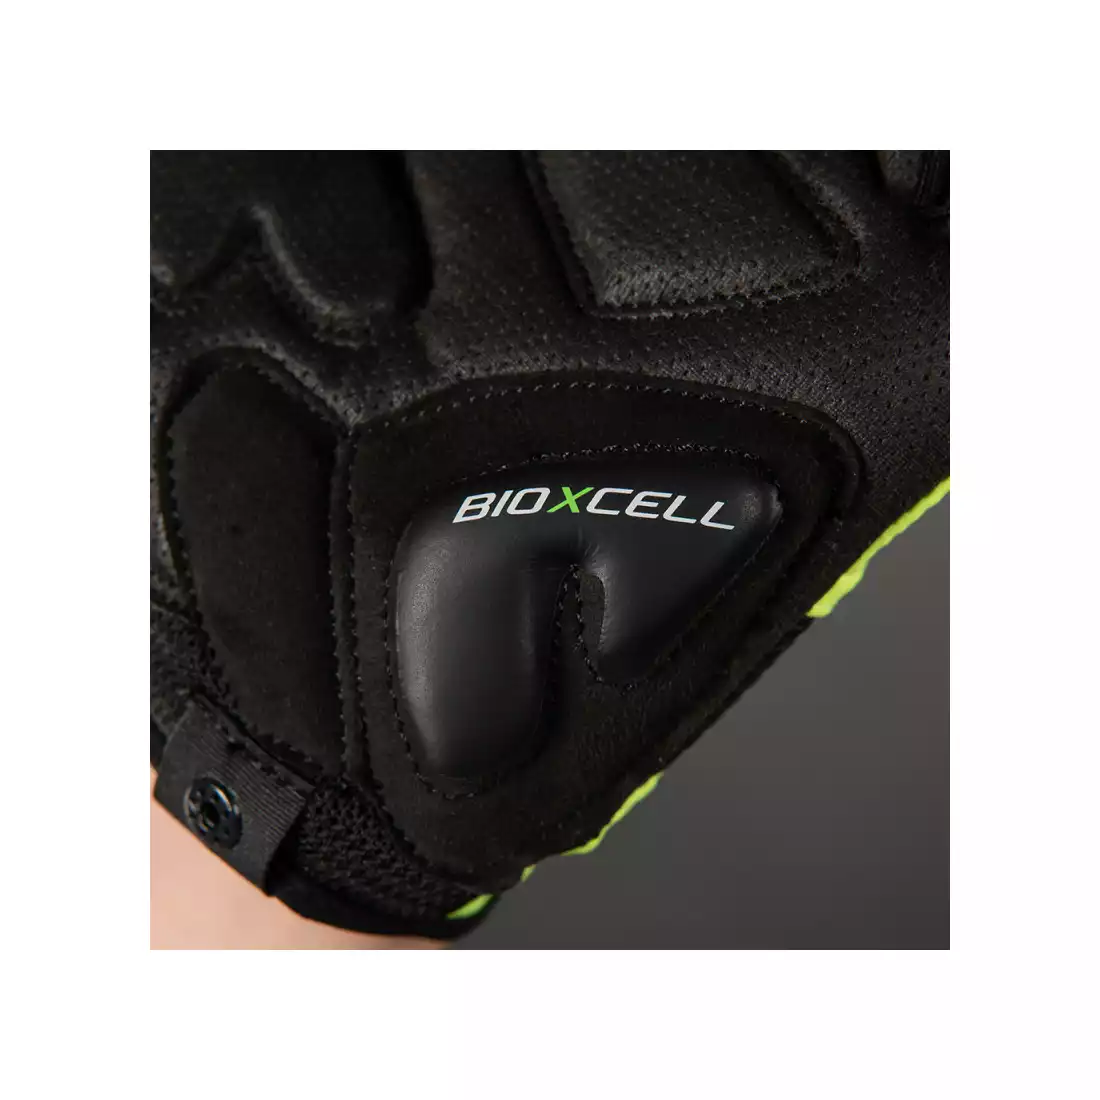 CHIBA rękawiczki rowerowe bioxcell czerwone 3060120 